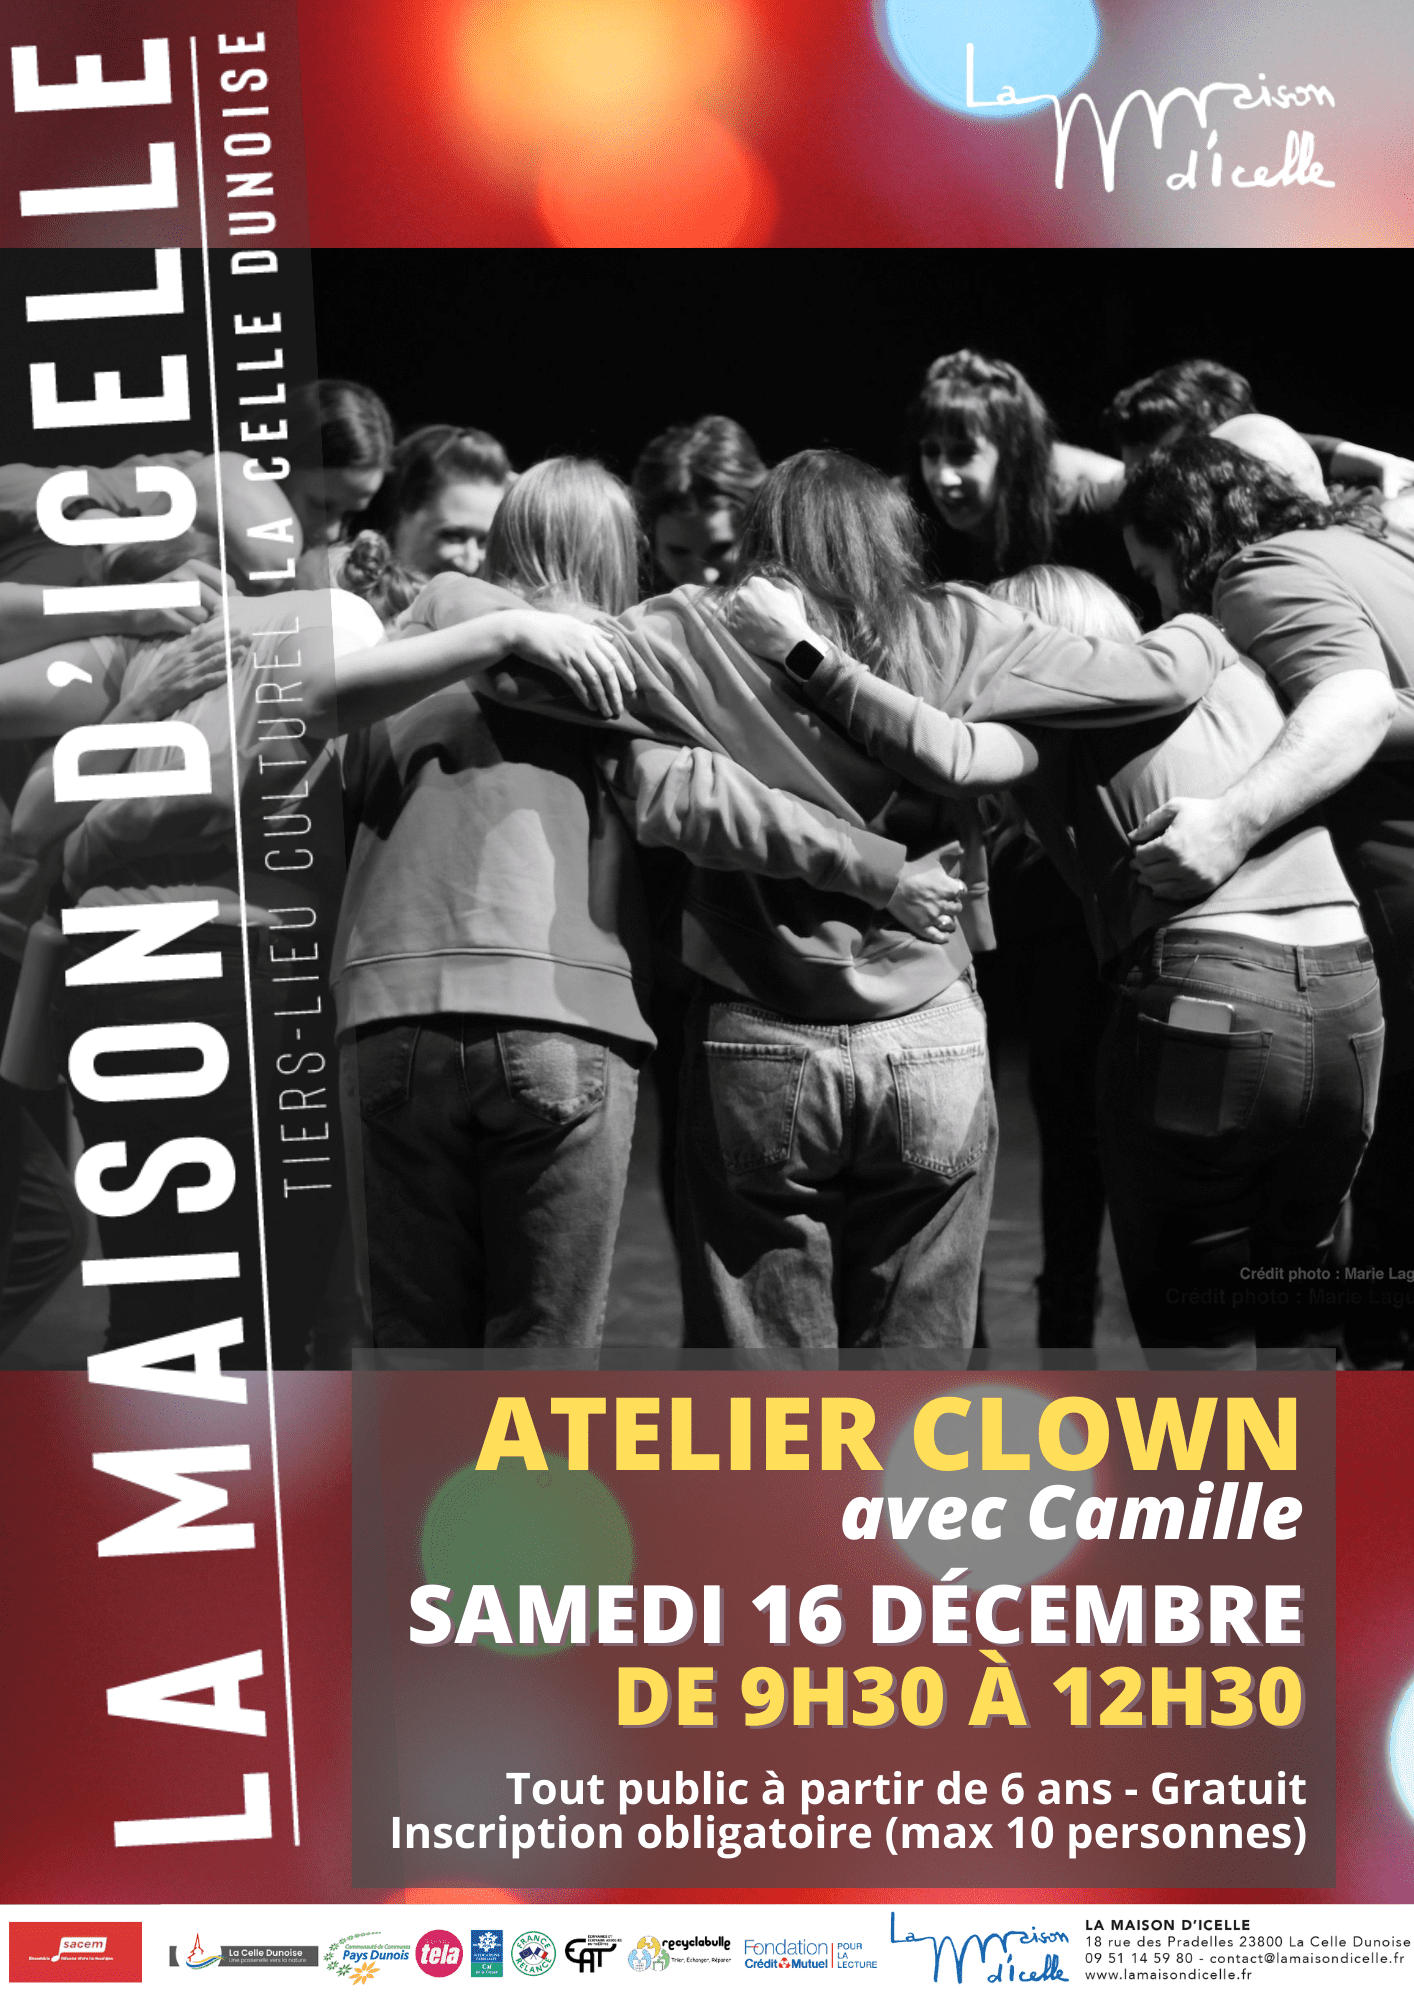 You are currently viewing Atelier clown avec Camille<br>Samedi 16 décembre de 9h30 à 12h30